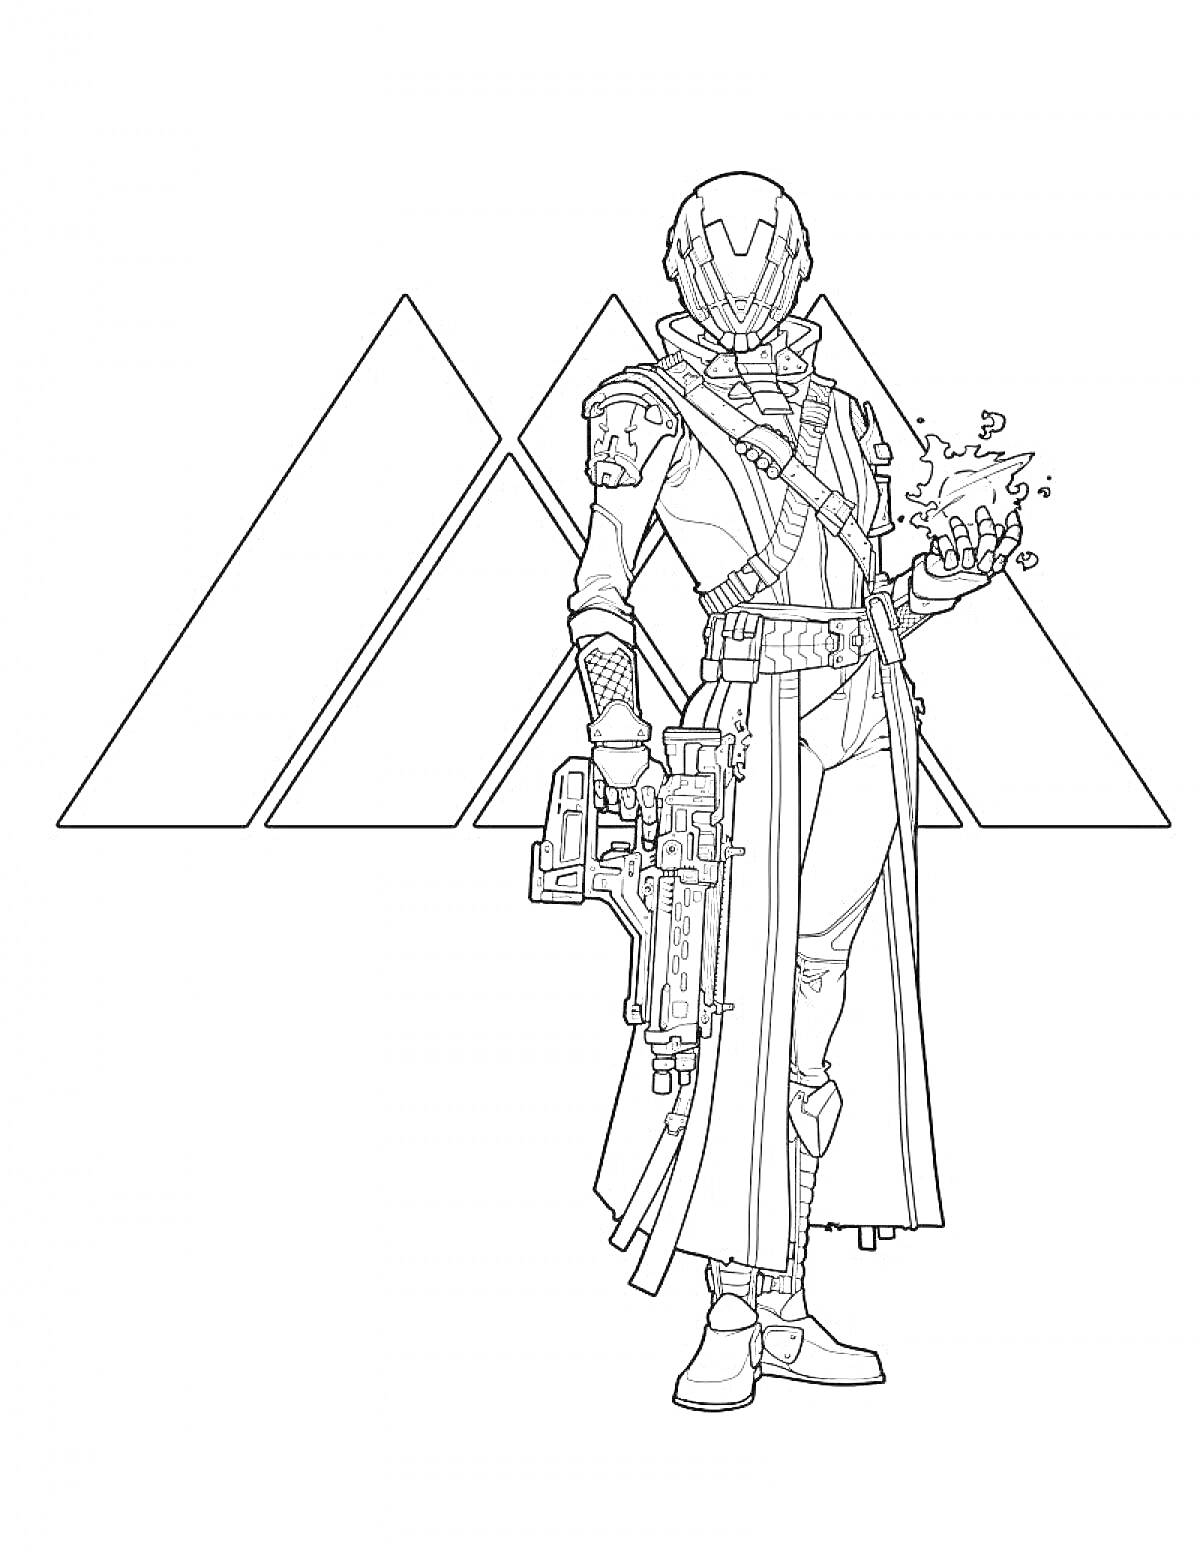 Раскраска Человек в футуристической броне с оружием и магическим шаром на фоне трех треугольников